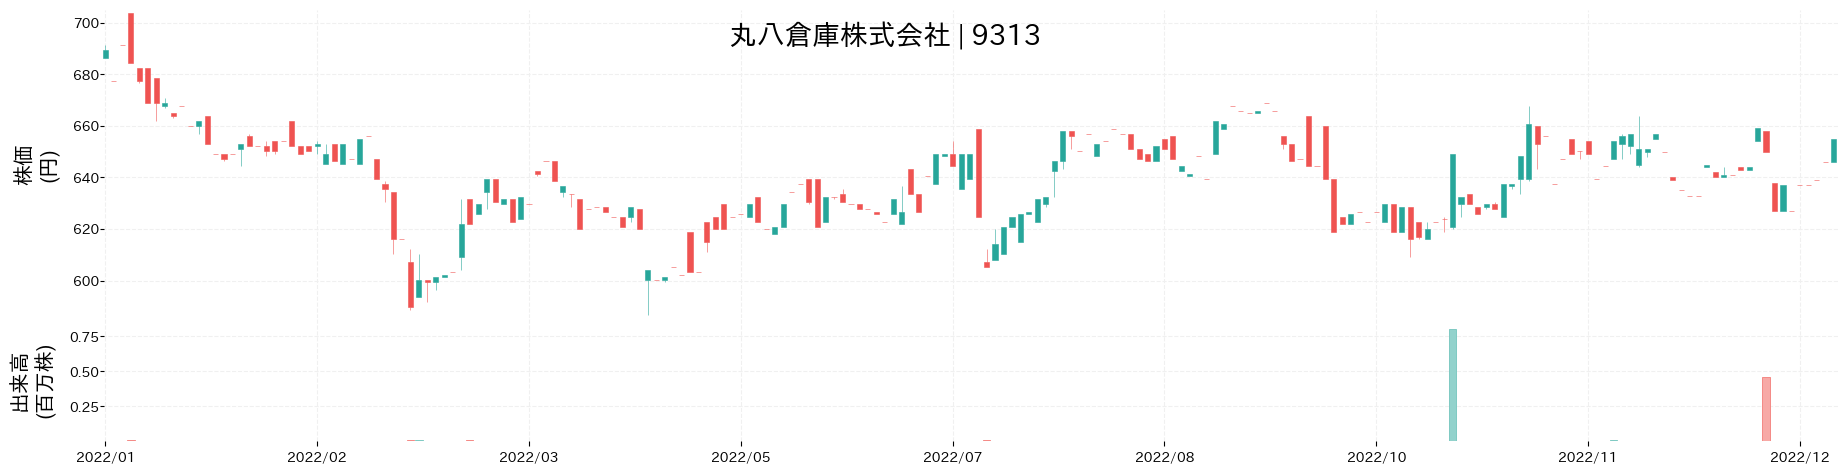 丸八倉庫の株価推移(2022)